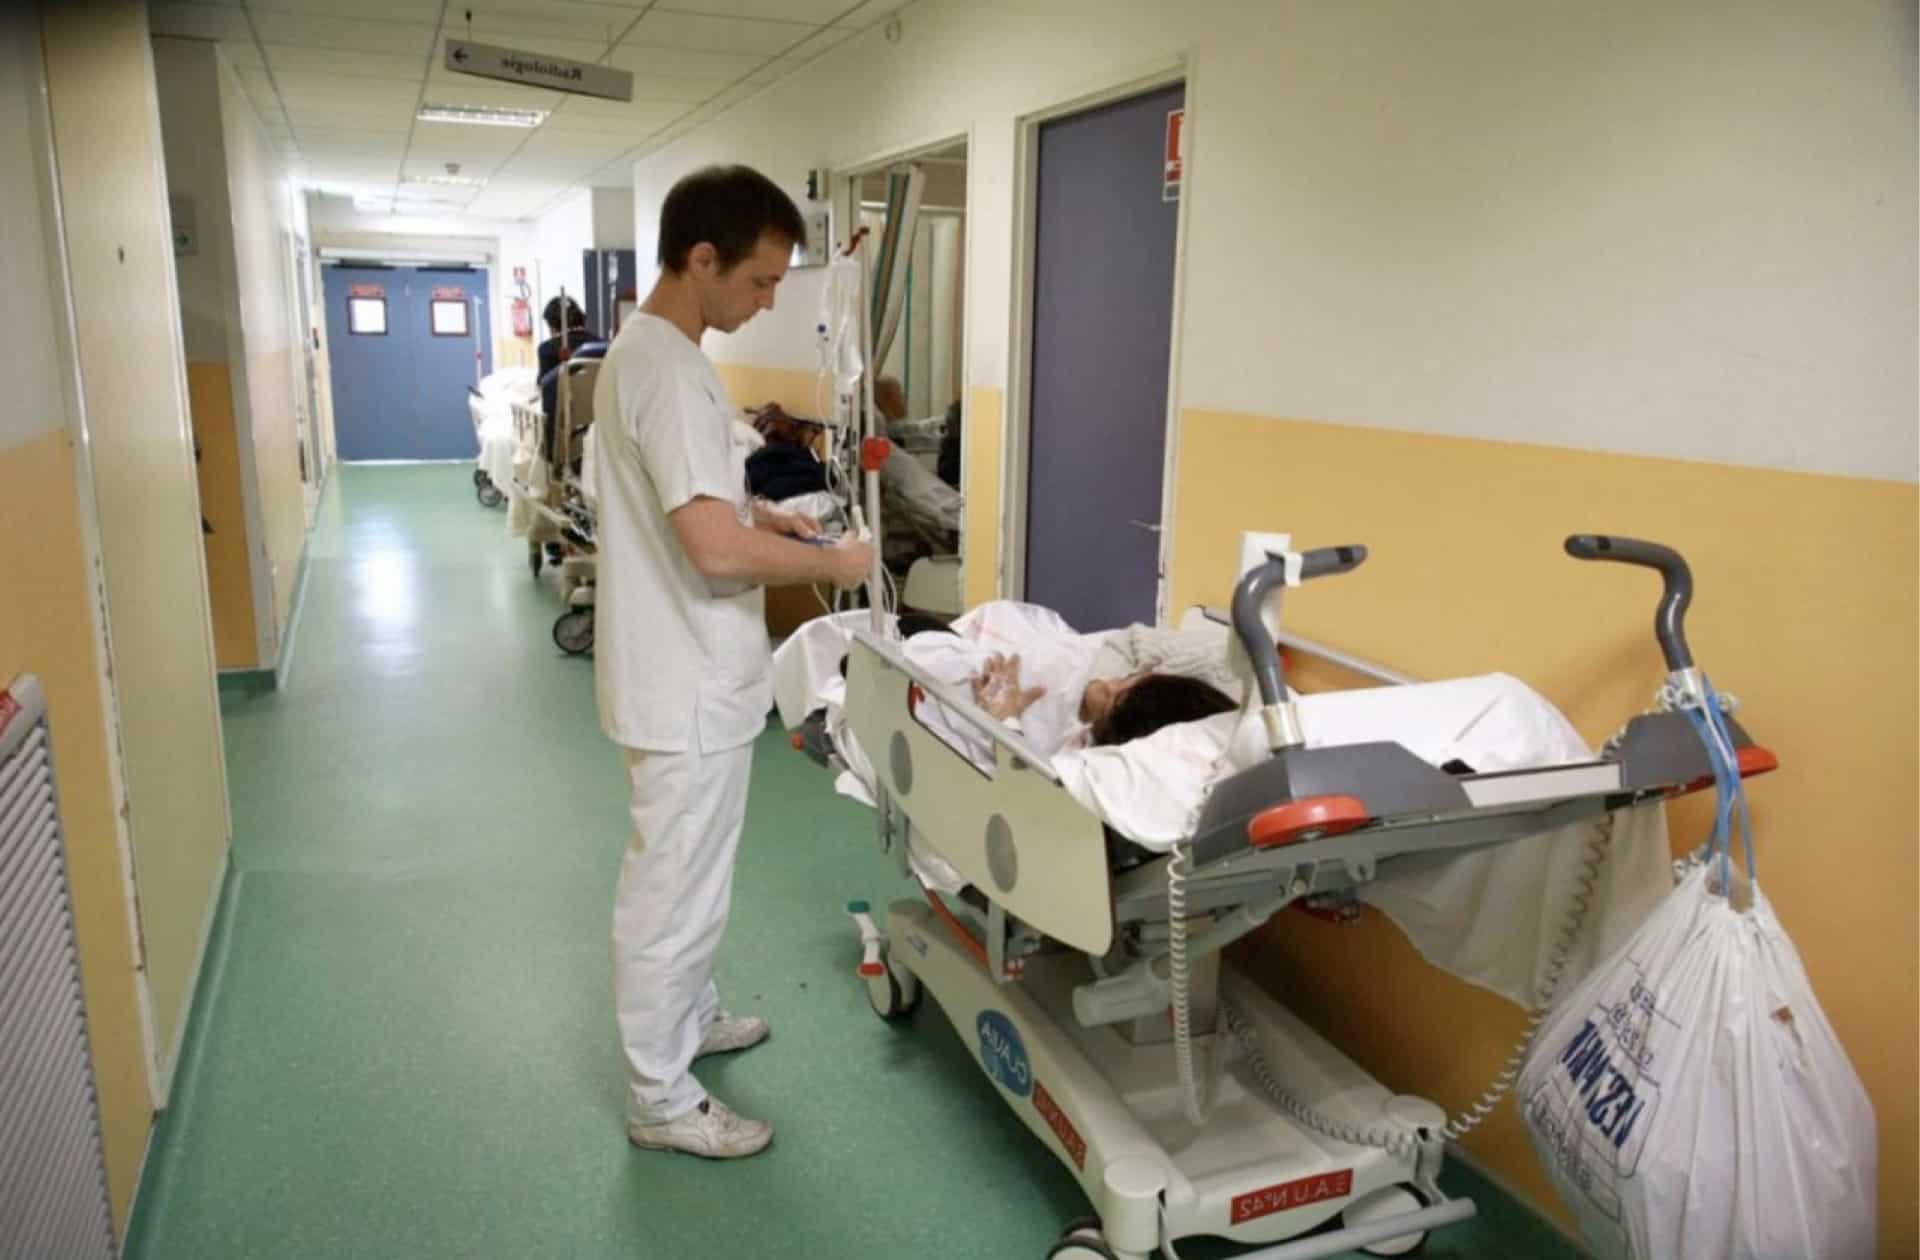 Crise d'angoisse aux urgences hospitalières: Prévenir plus que guérir.